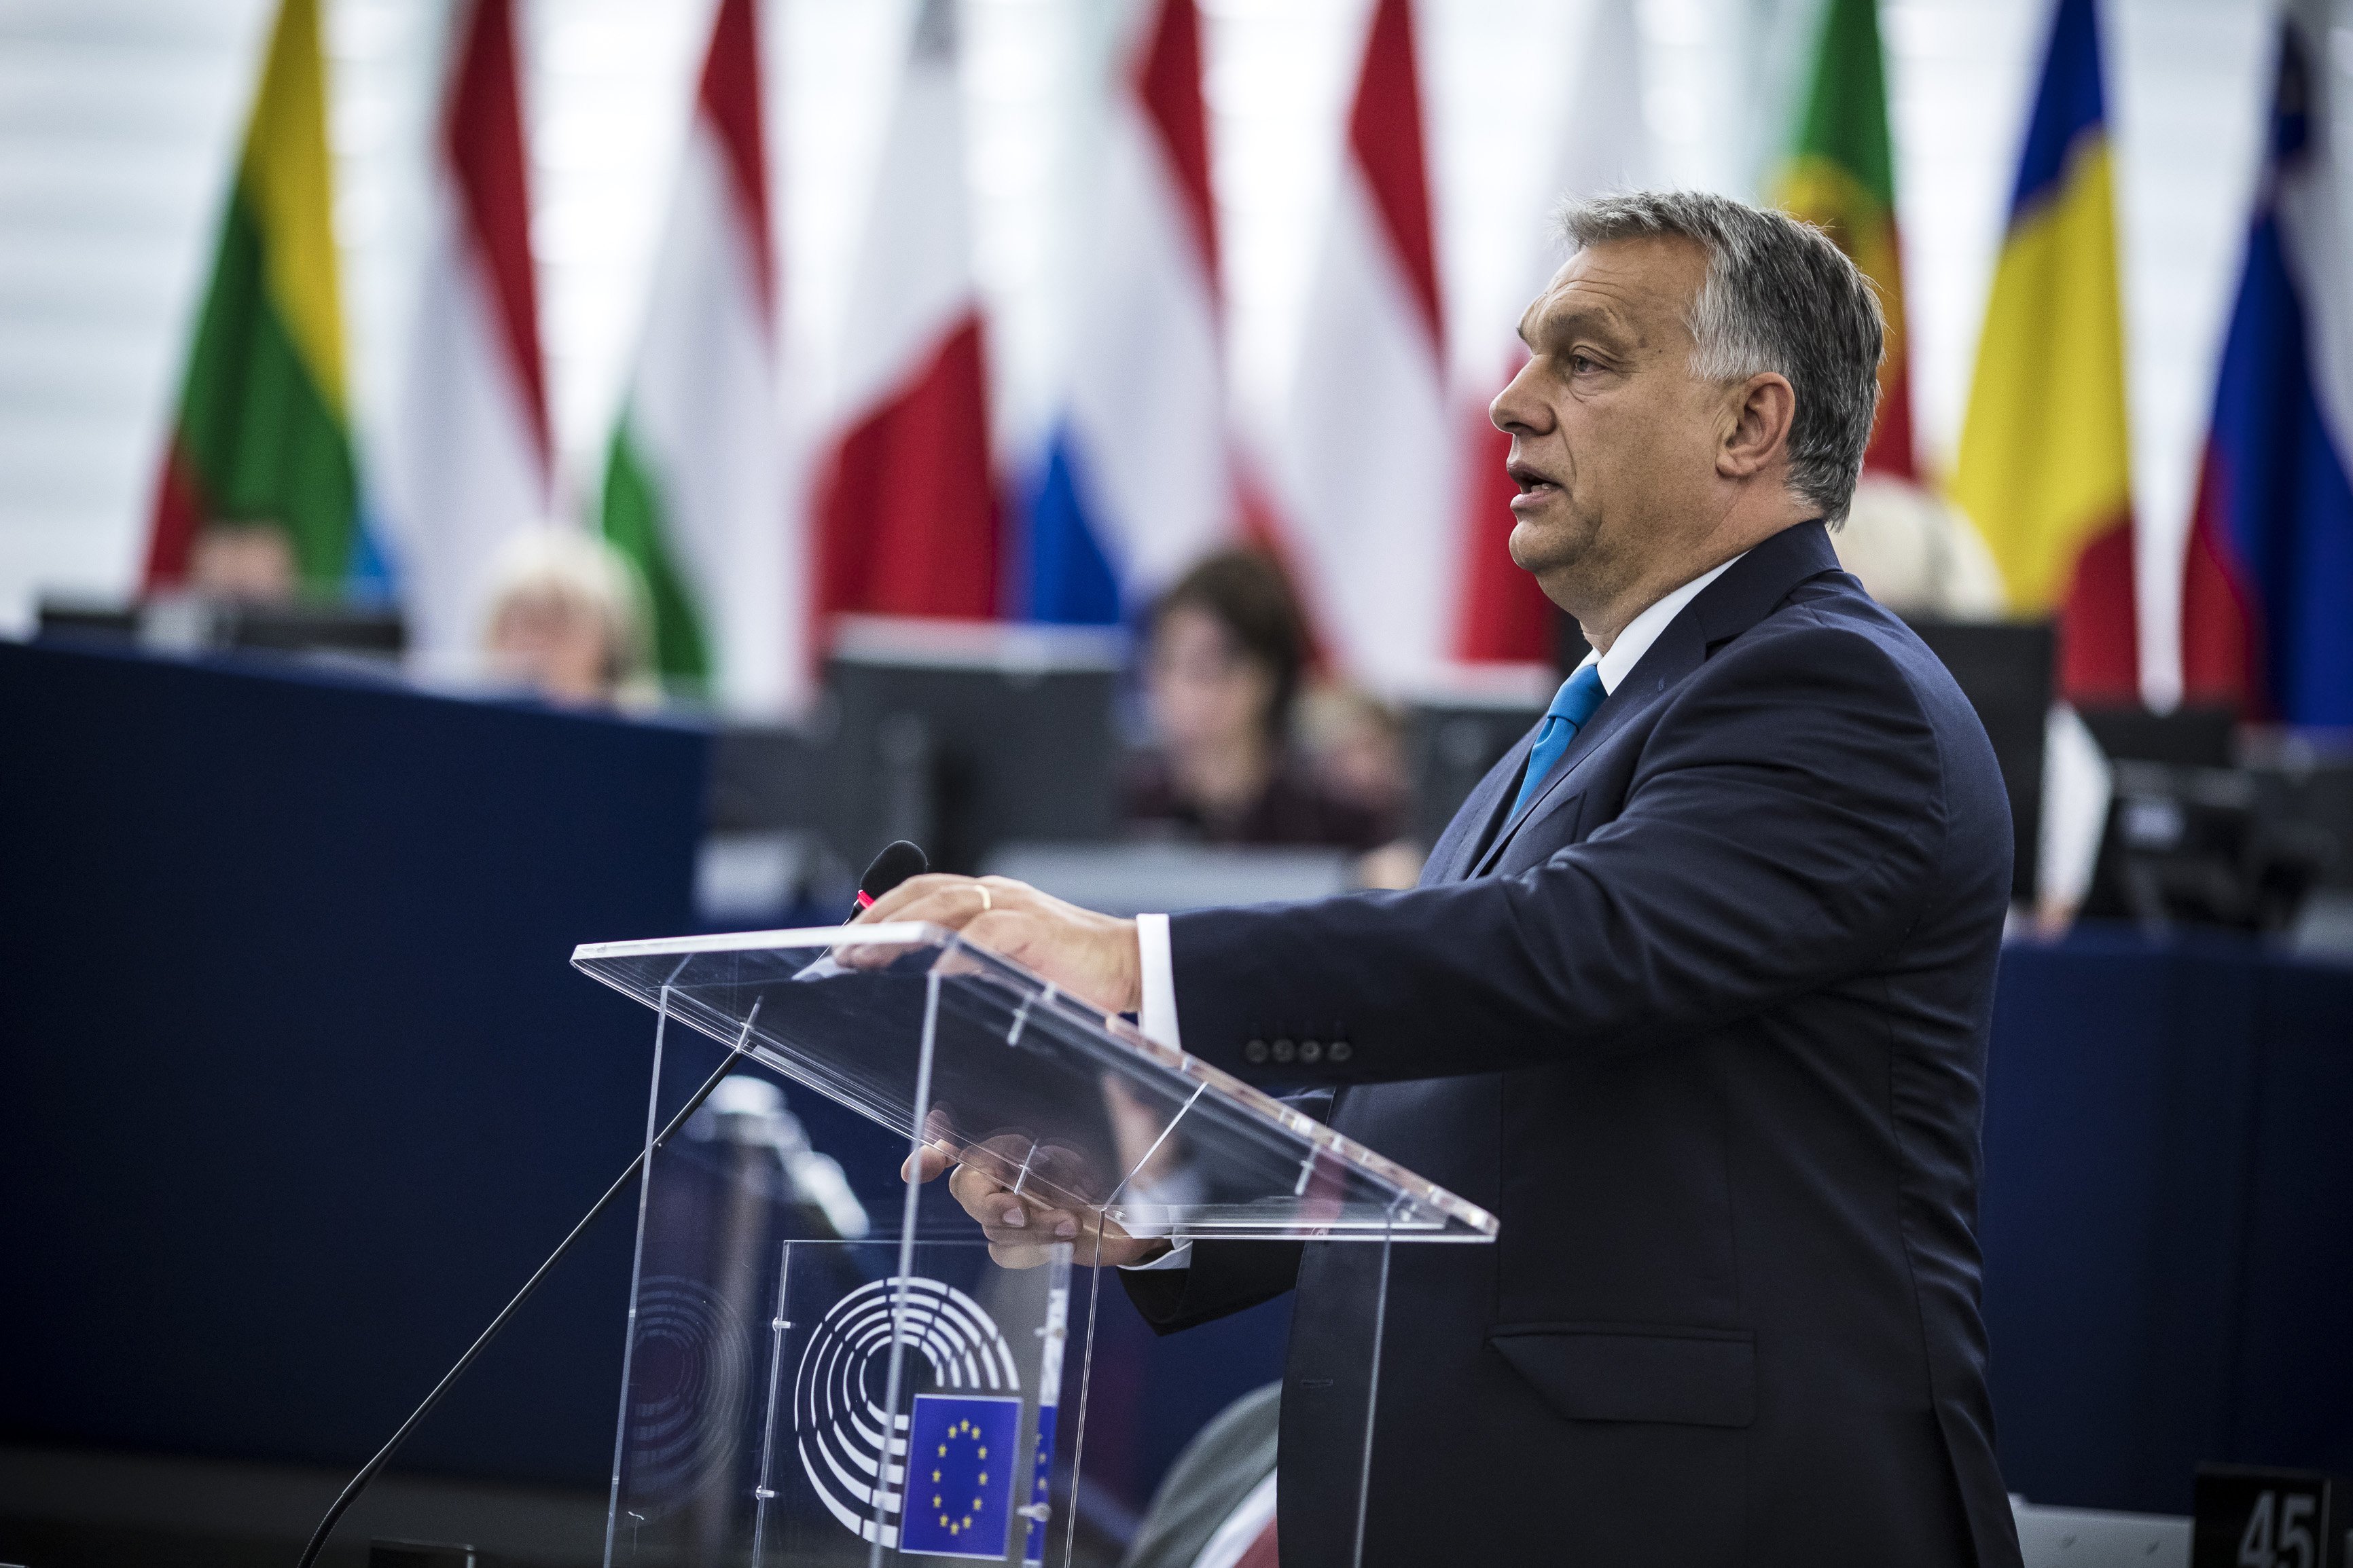 LIBE Ausschuss in Budapest: Delegation überprüft Ungarns Rechtsstaatlichkeit